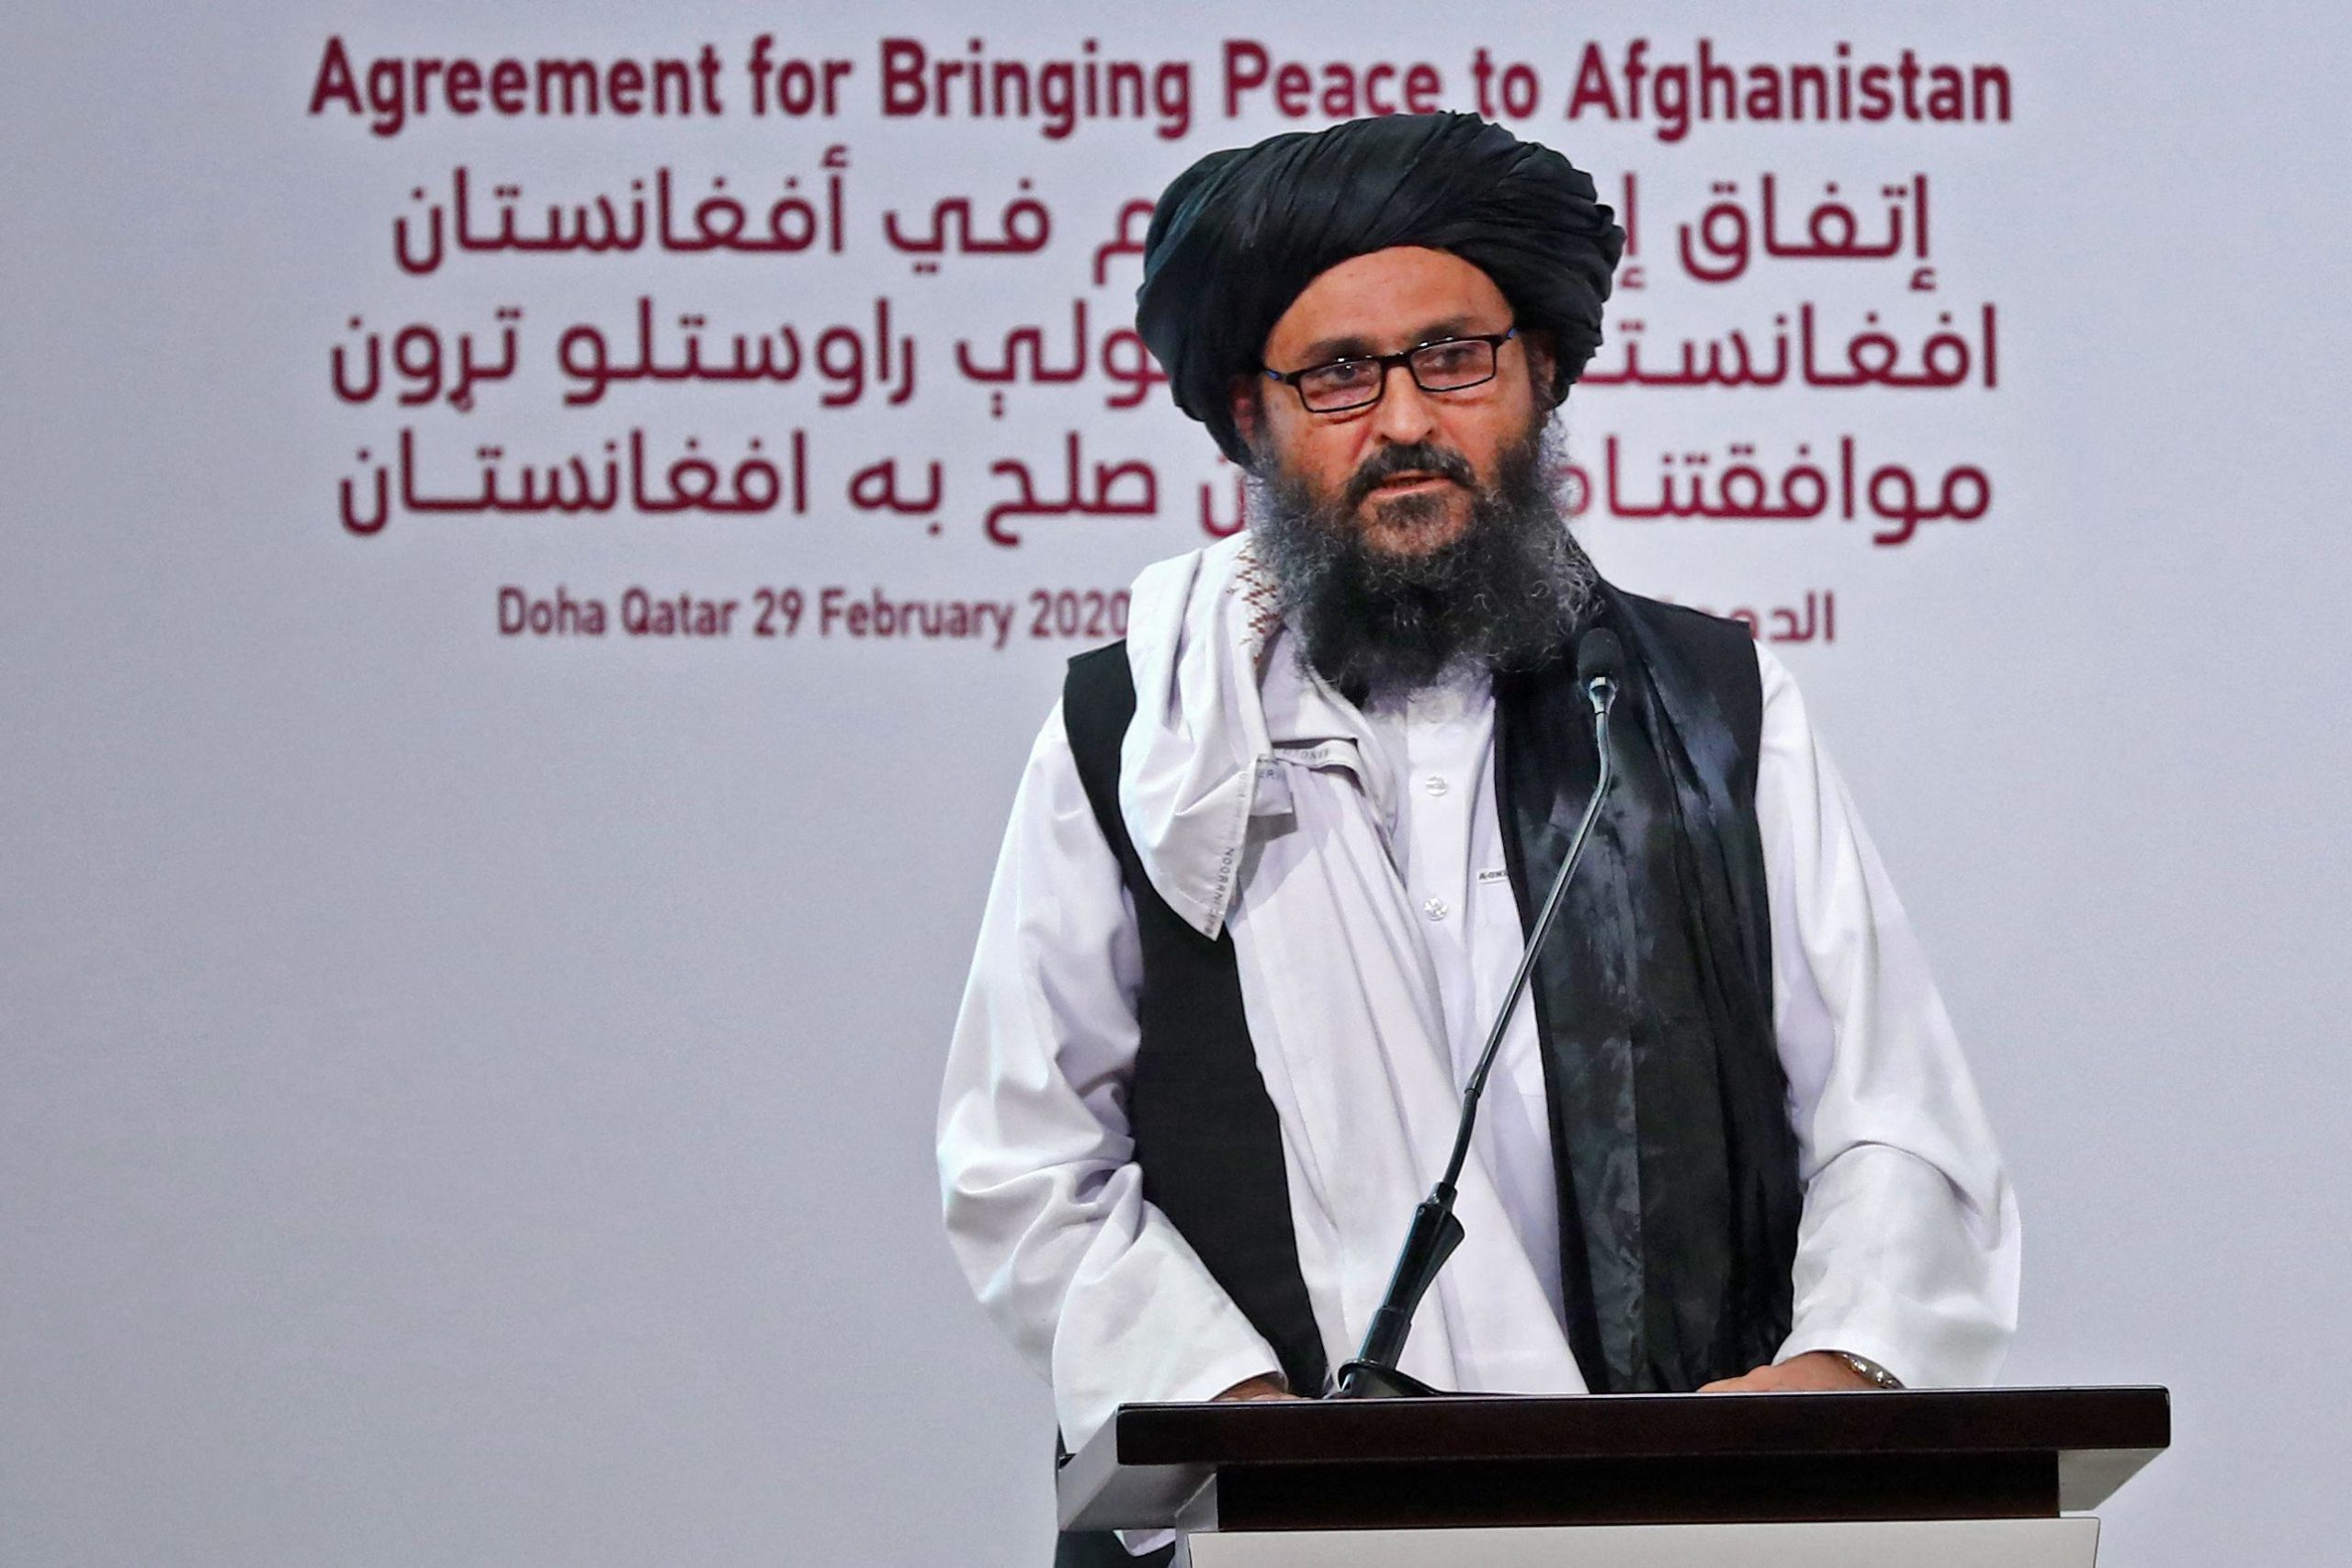 ملا عبدالغنی برادر که با نام ملا برادر (برادر لقبی بود که ملا عمر بنیانگذار طالبان به ملا غنی داد) رییس دولت آینده افغانستان خواهد بود.